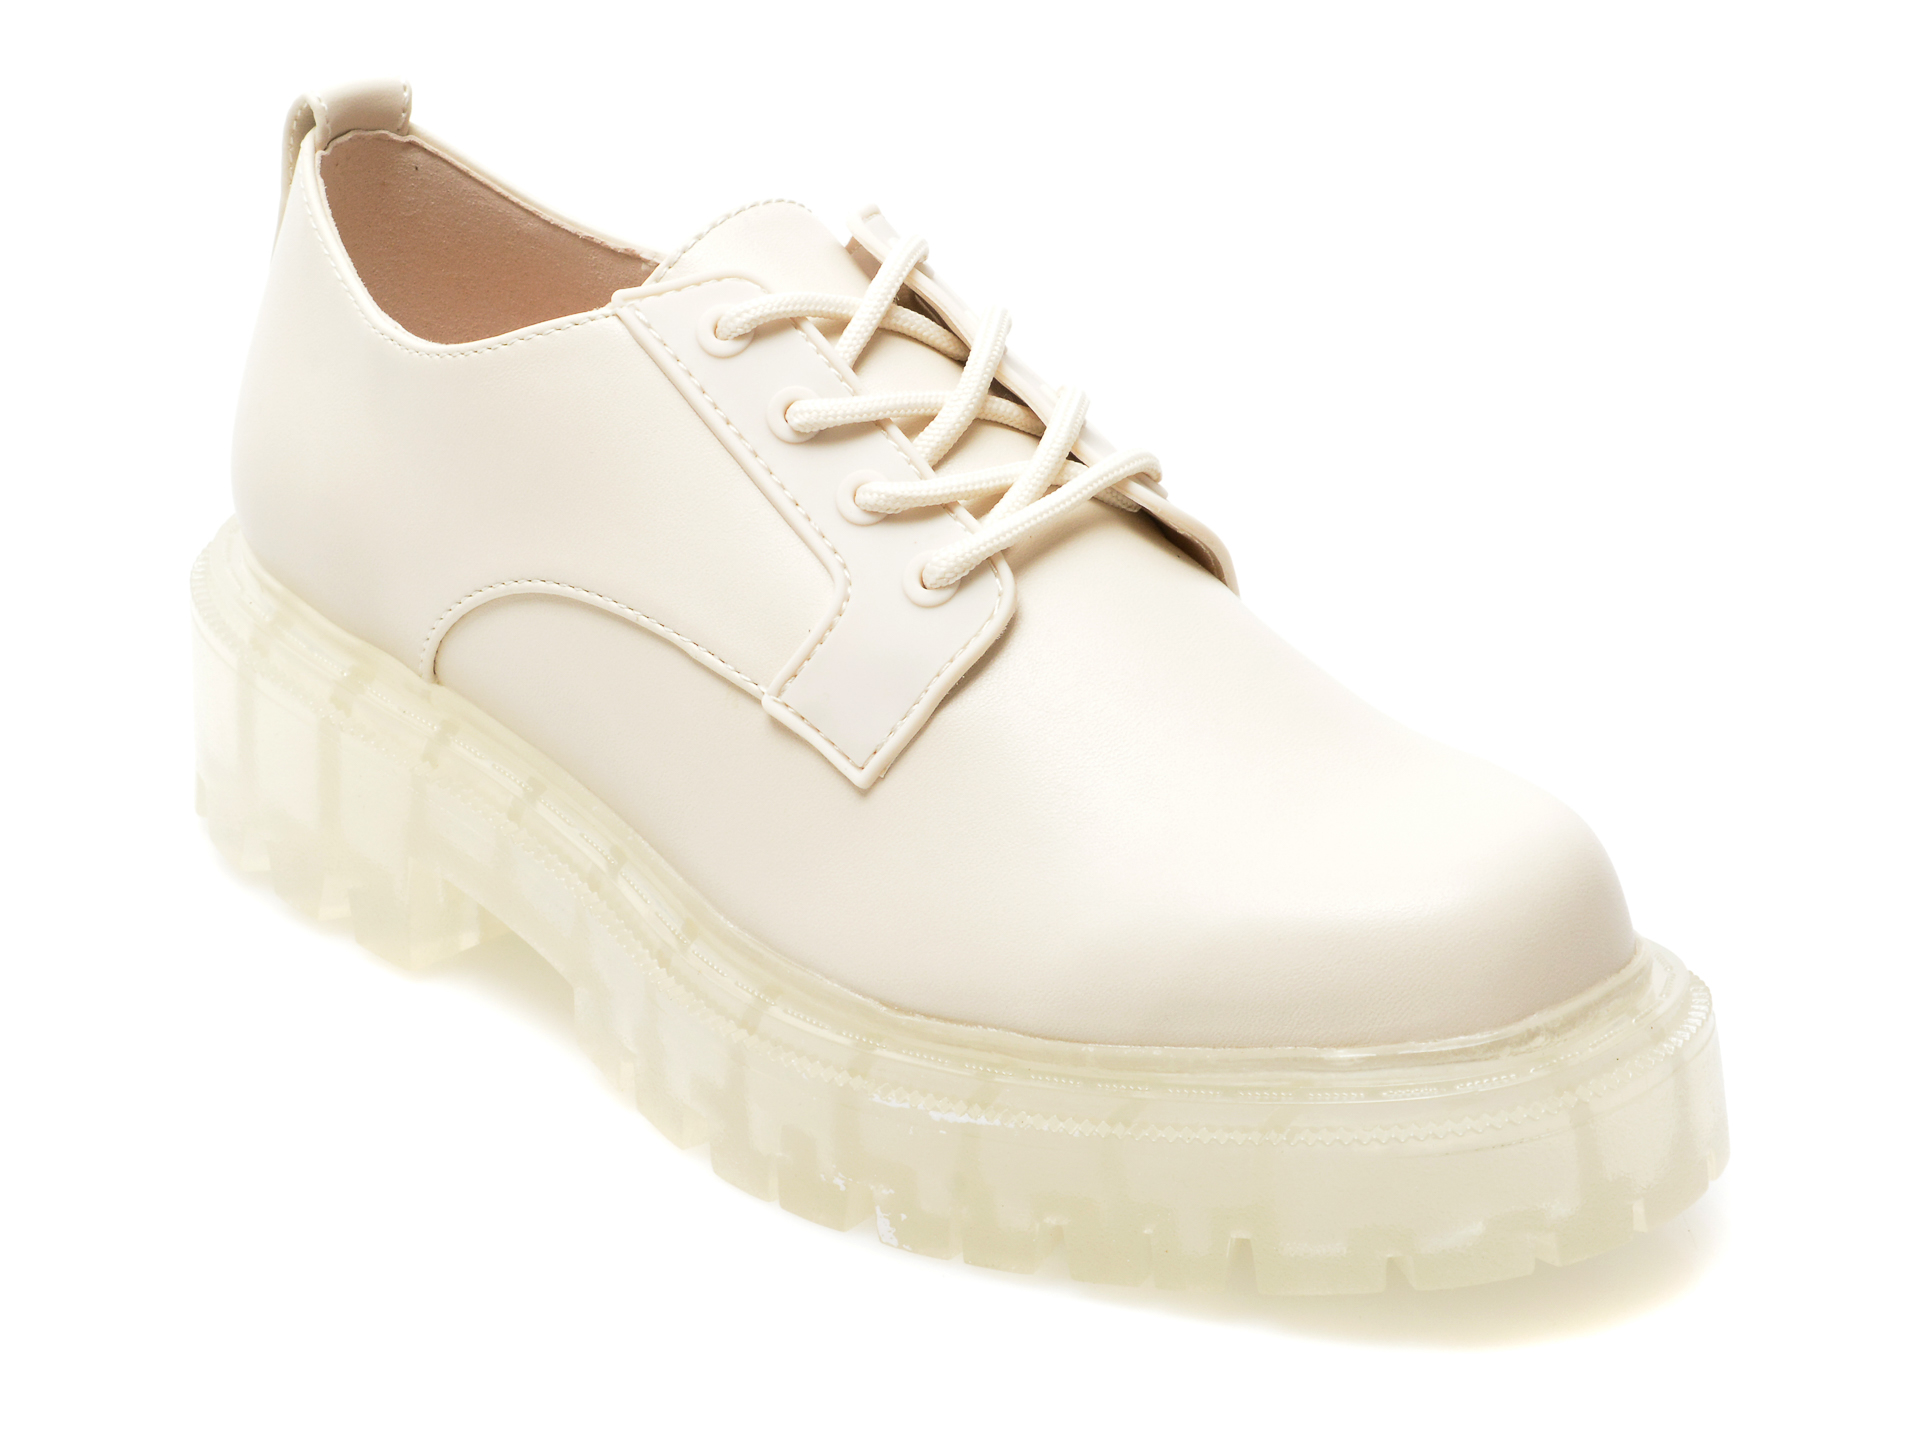 Pantofi ALDO albi, ALEXISSE110, din piele ecologica Aldo